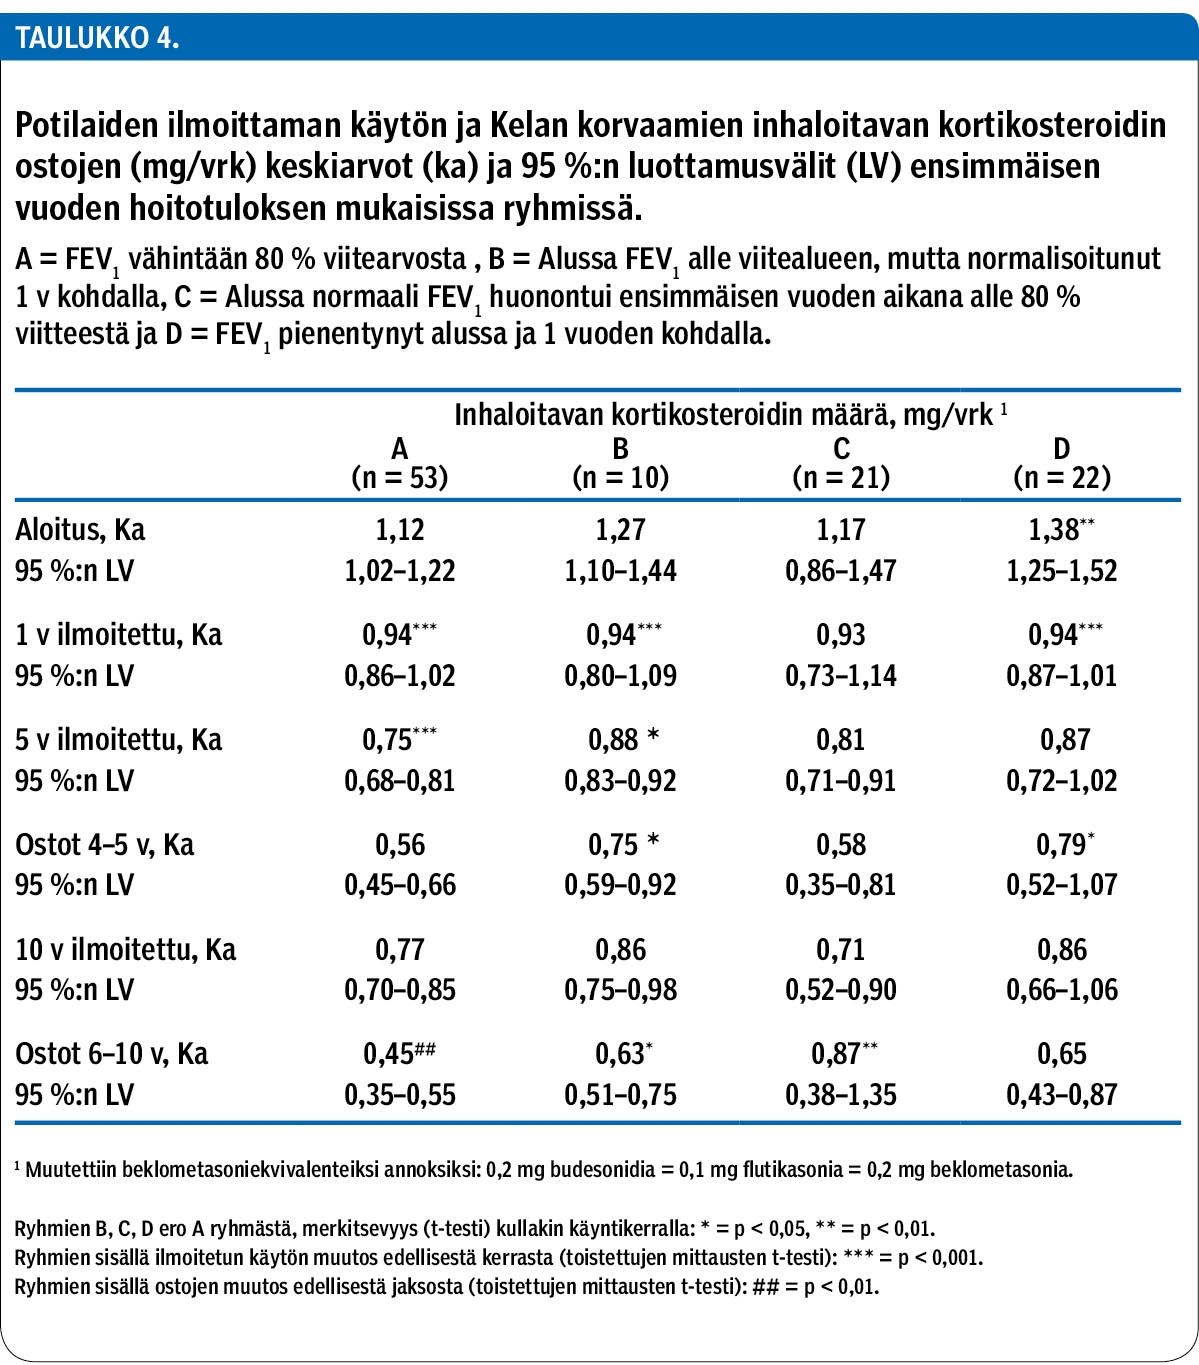 Potilaiden ilmoittaman käytön ja Kelan korvaamien inhaloitavan kortikosteroidin ostojen (mg/vrk) keskiarvot (ka) ja 95 %:n luottamusvälit (LV) ensimmäisen vuoden hoitotuloksen mukaisissa ryhmissä.